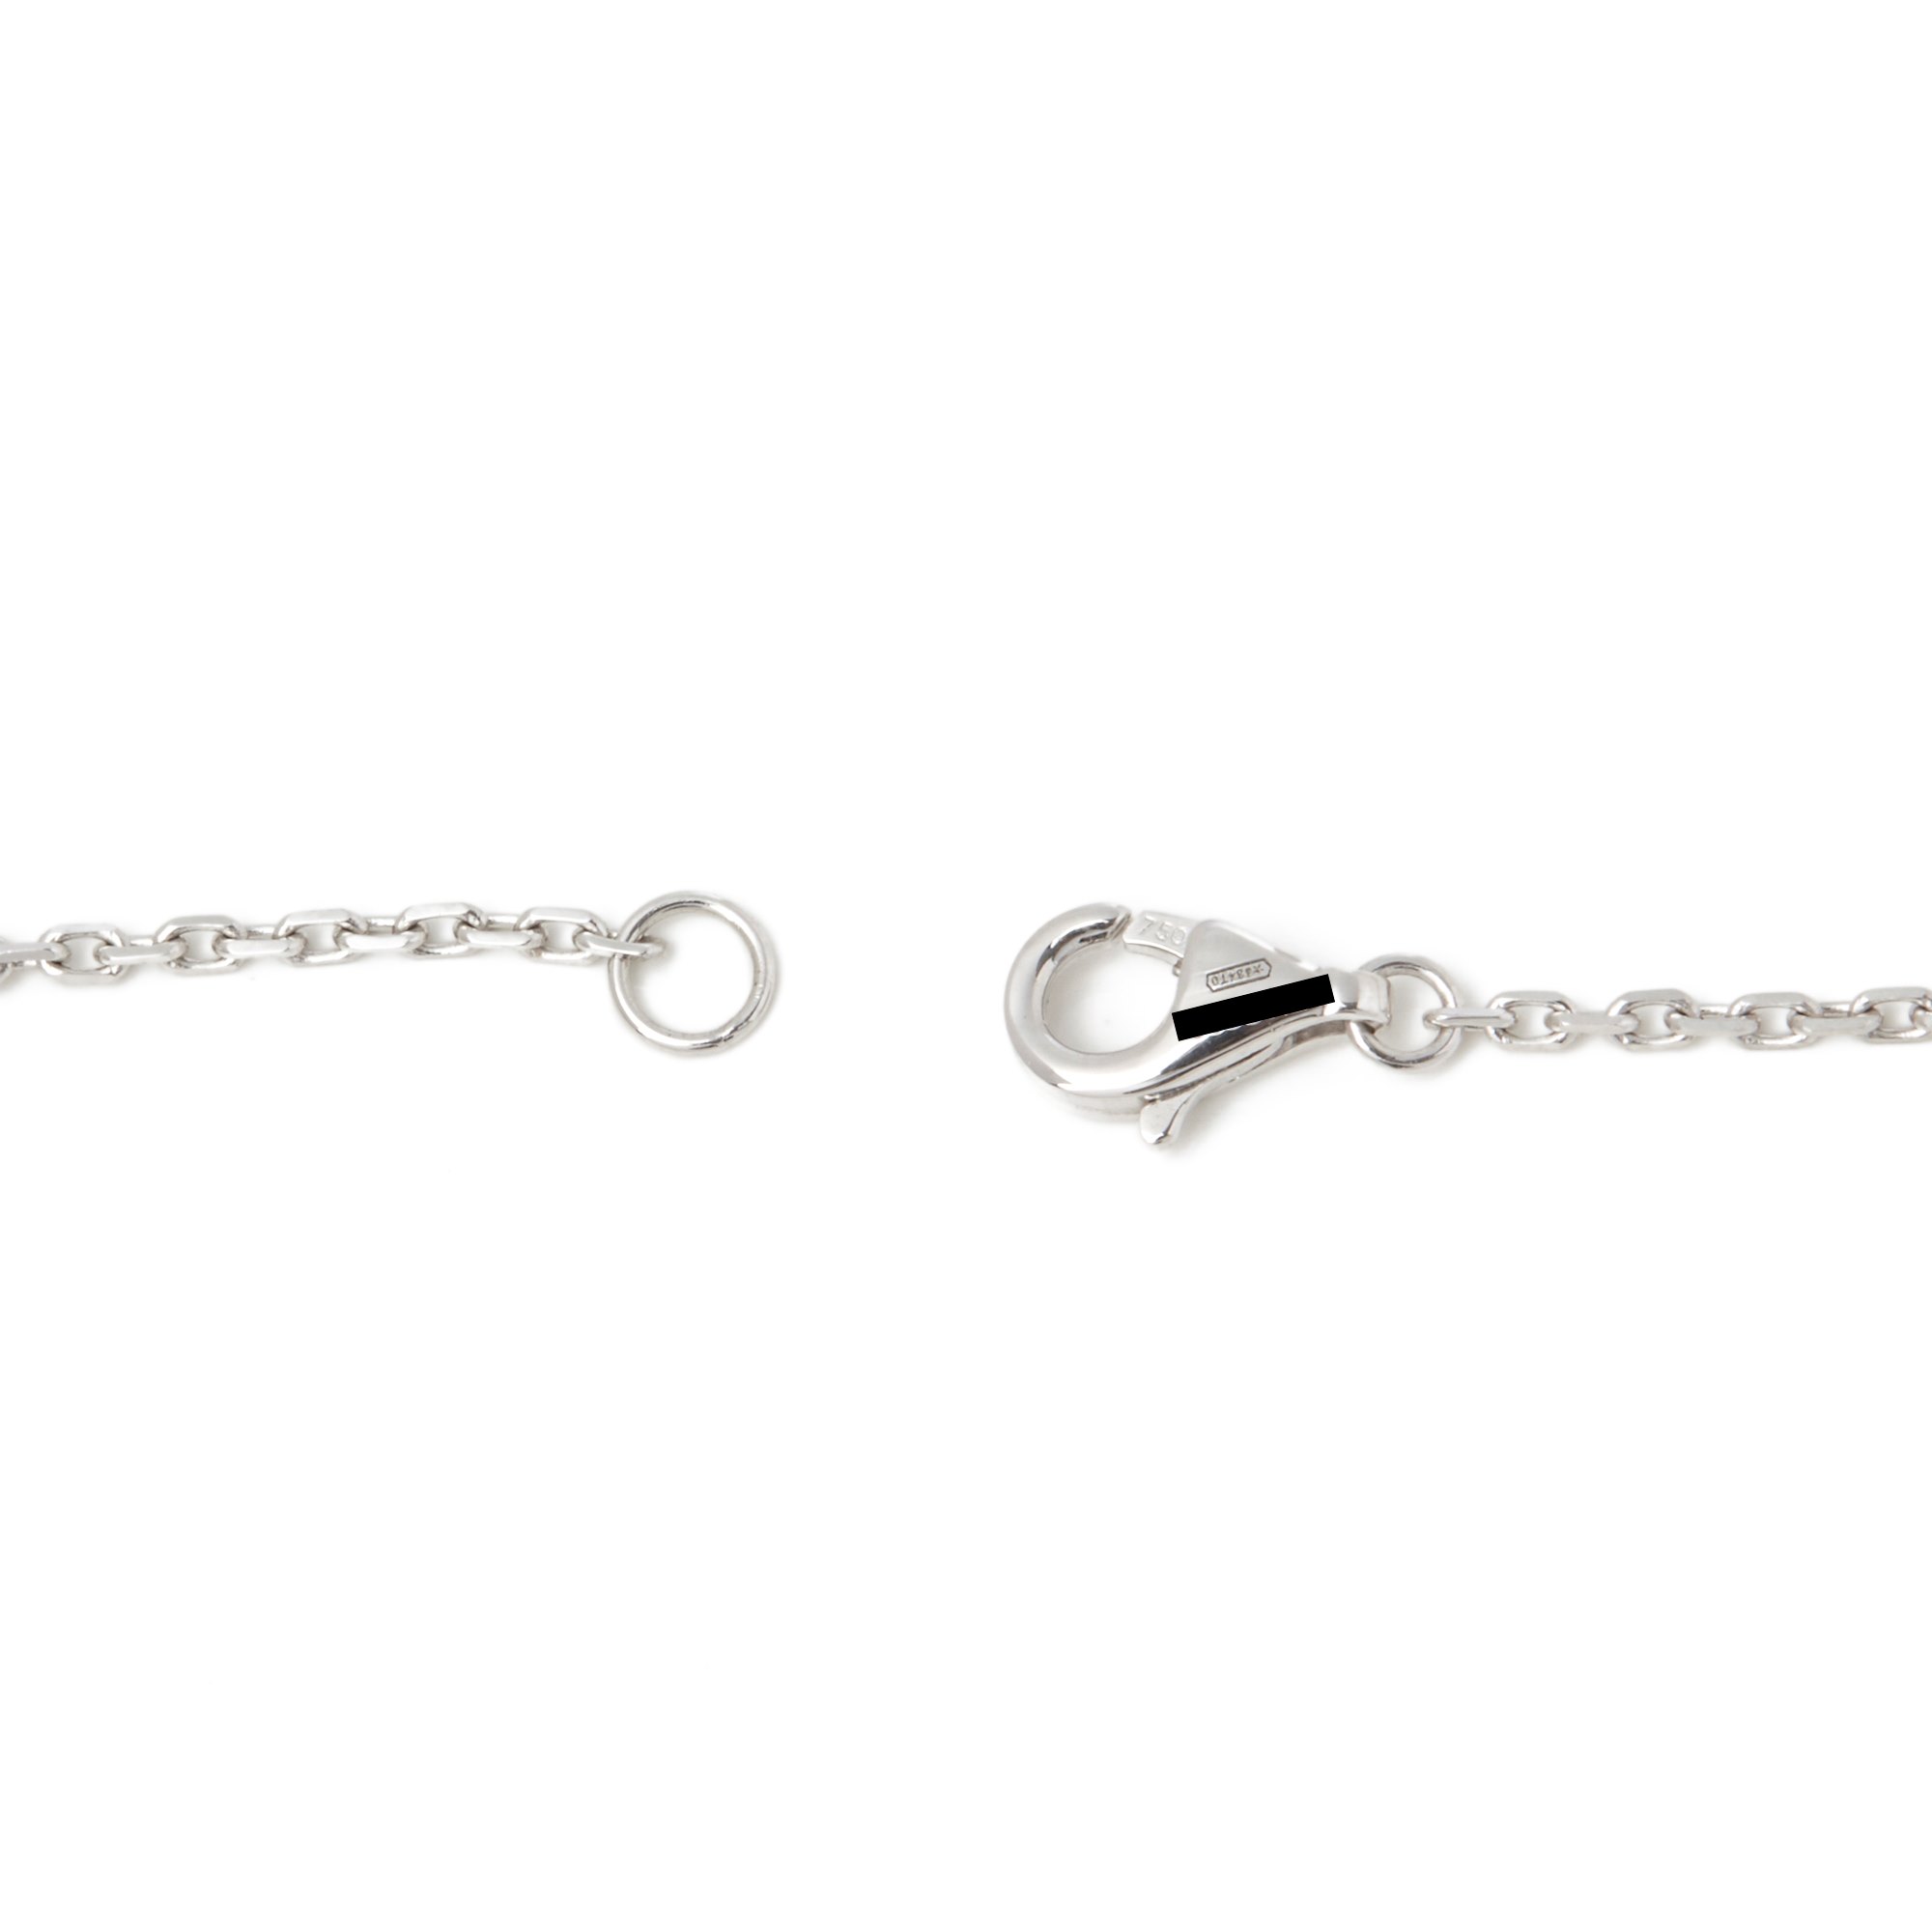 Cartier 18k White Gold Diamond Etincelle Necklace